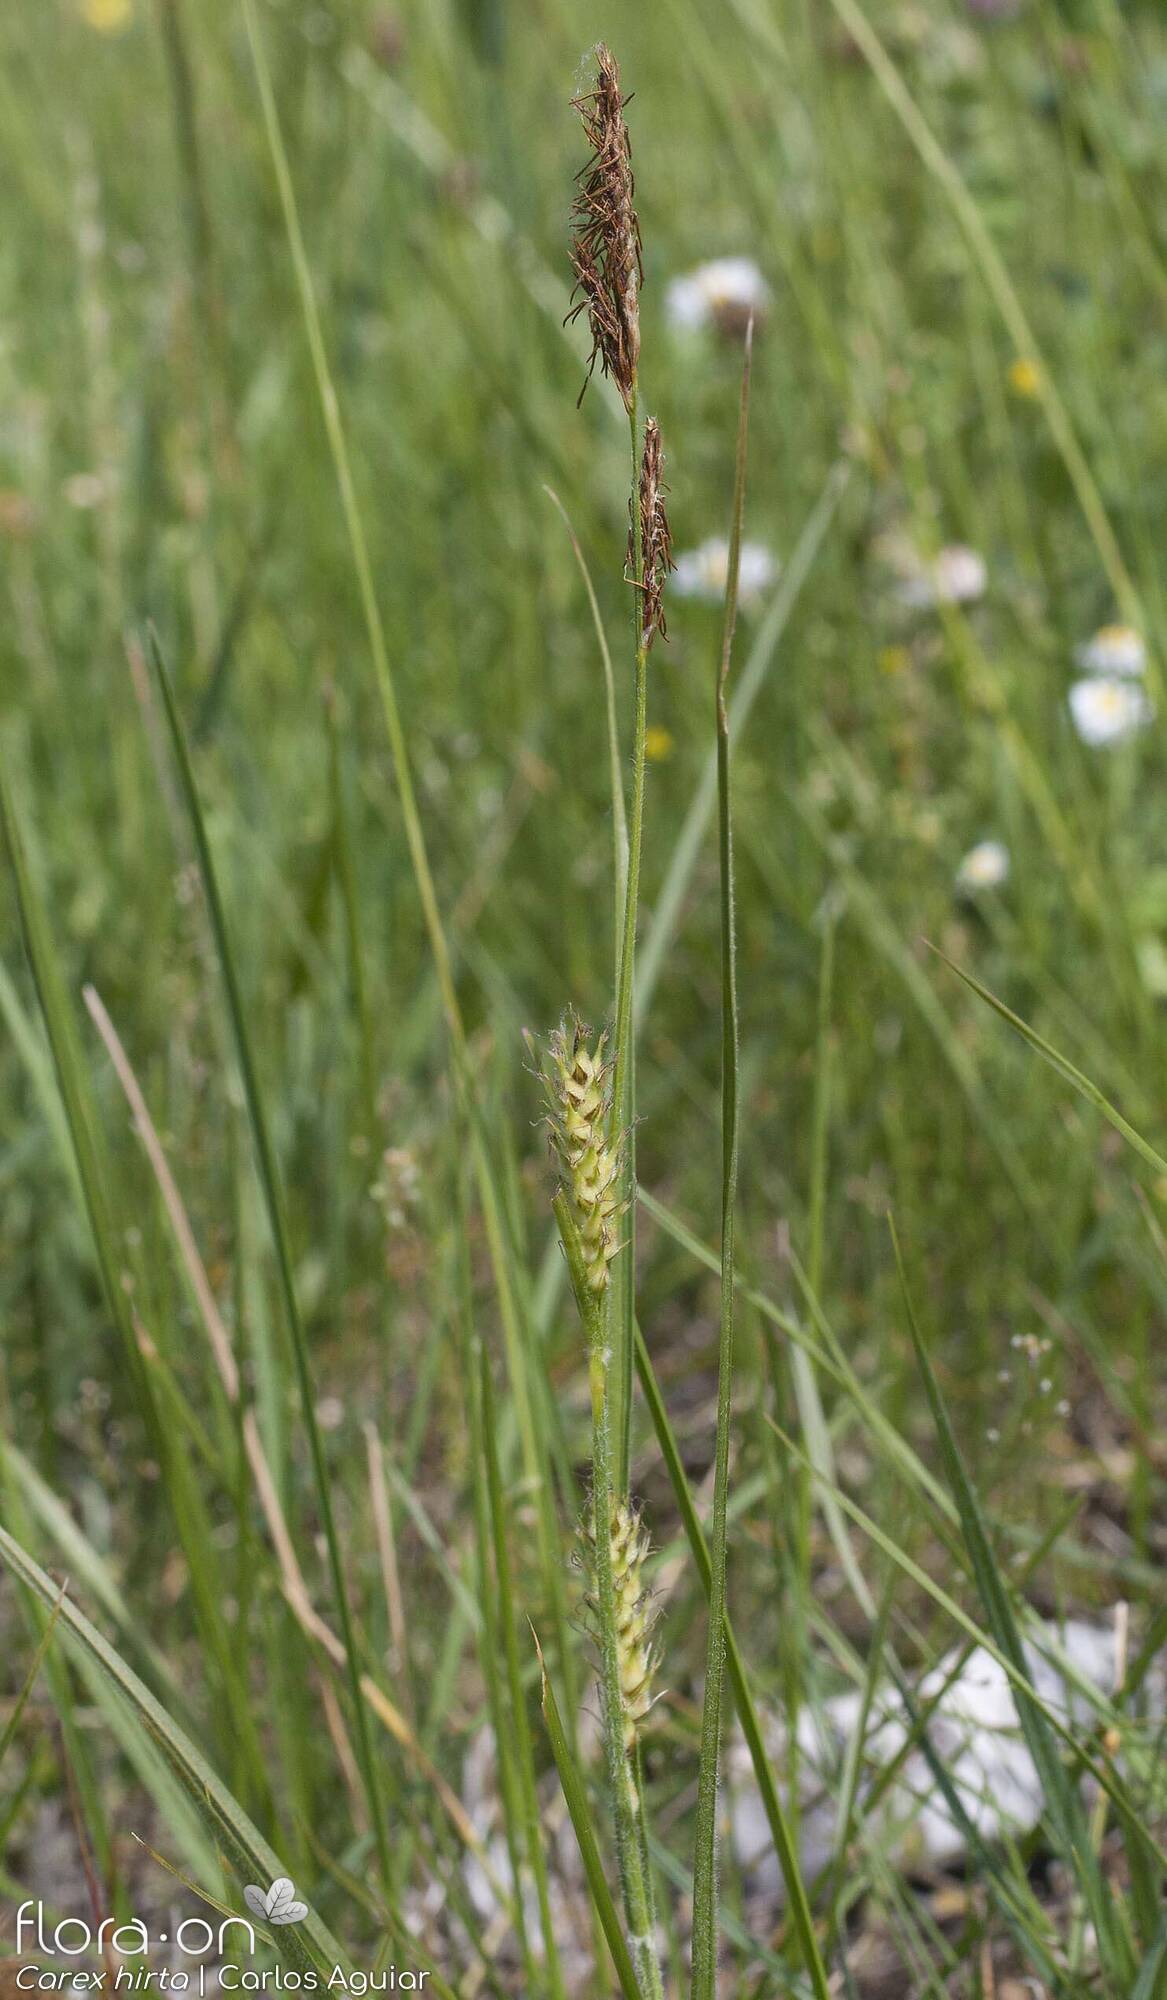 Carex hirta - Hábito | Carlos Aguiar; CC BY-NC 4.0